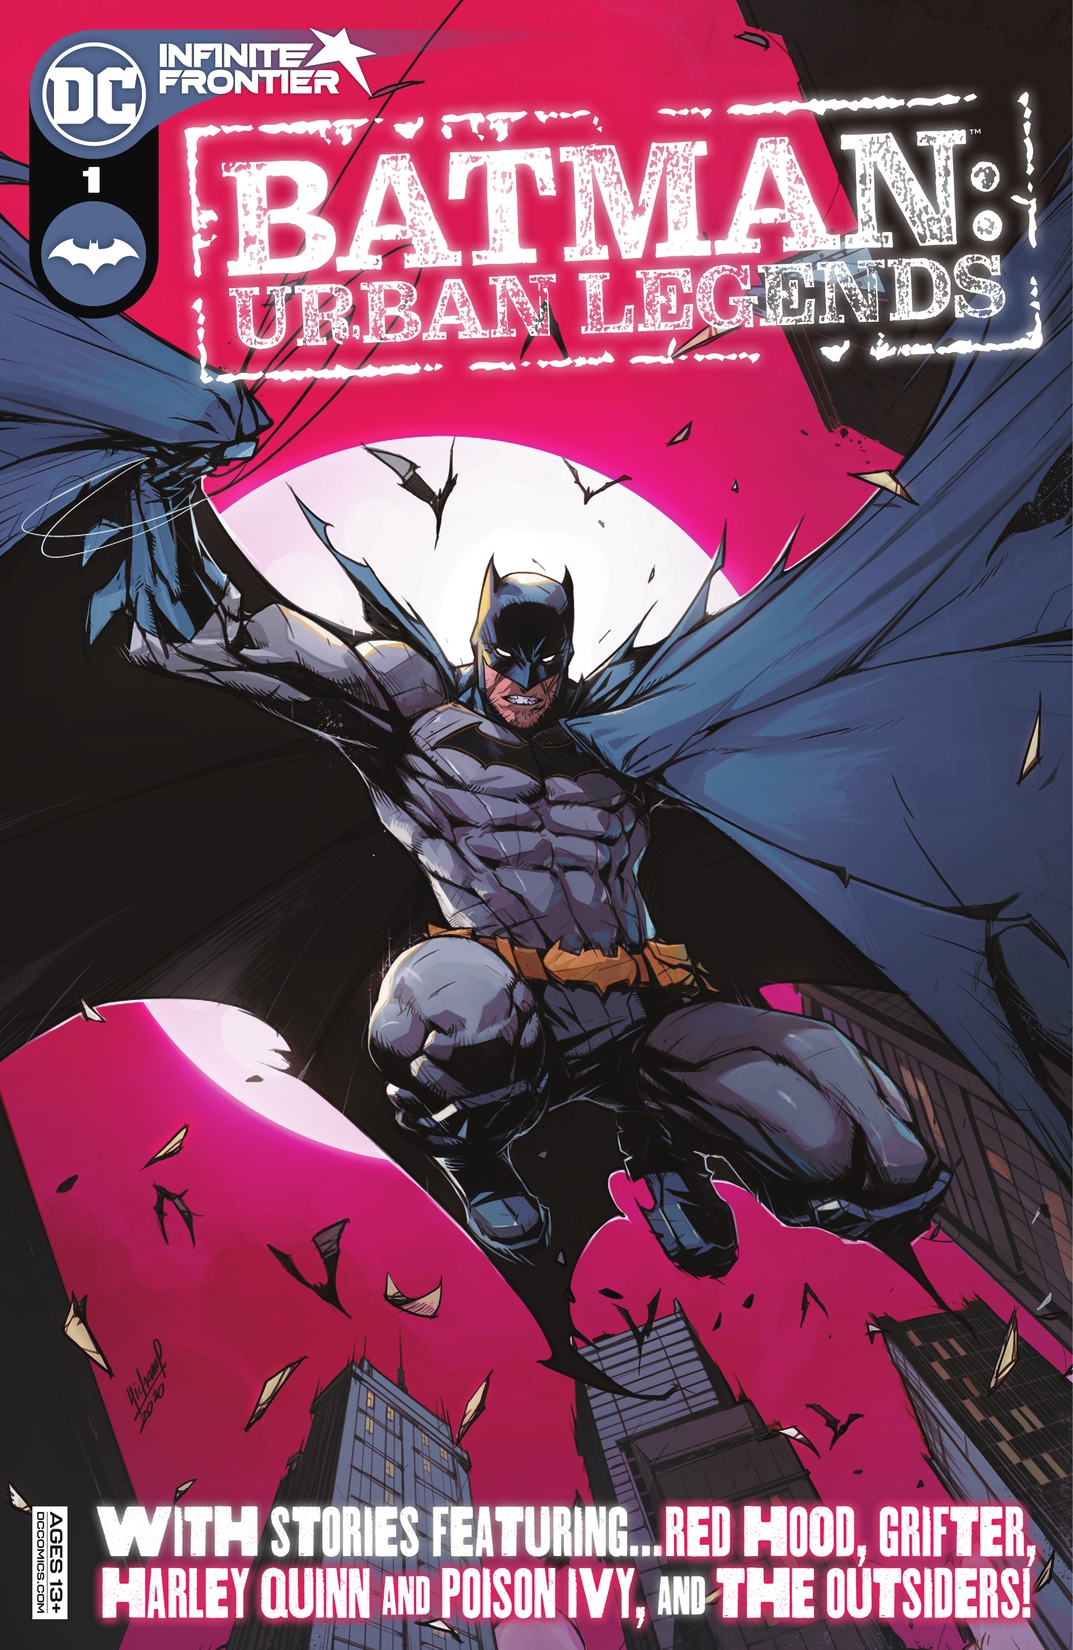 Batman: Urban Legends #1 preview images